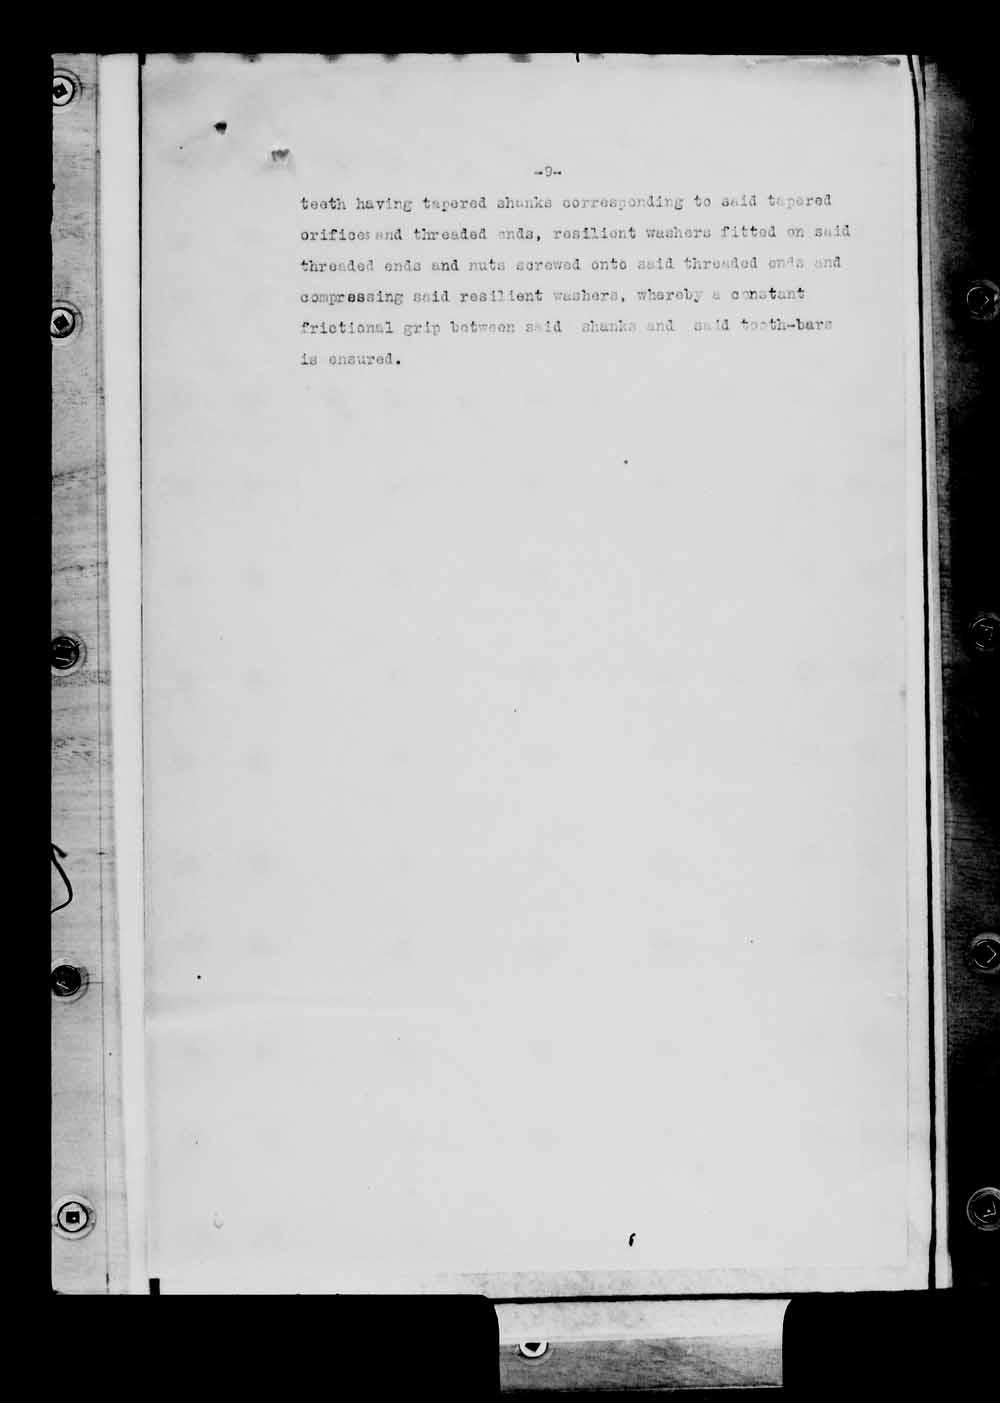 Page numérisé de Brevets canadiens, 1869-1919 pour l'image numéro: e004961084